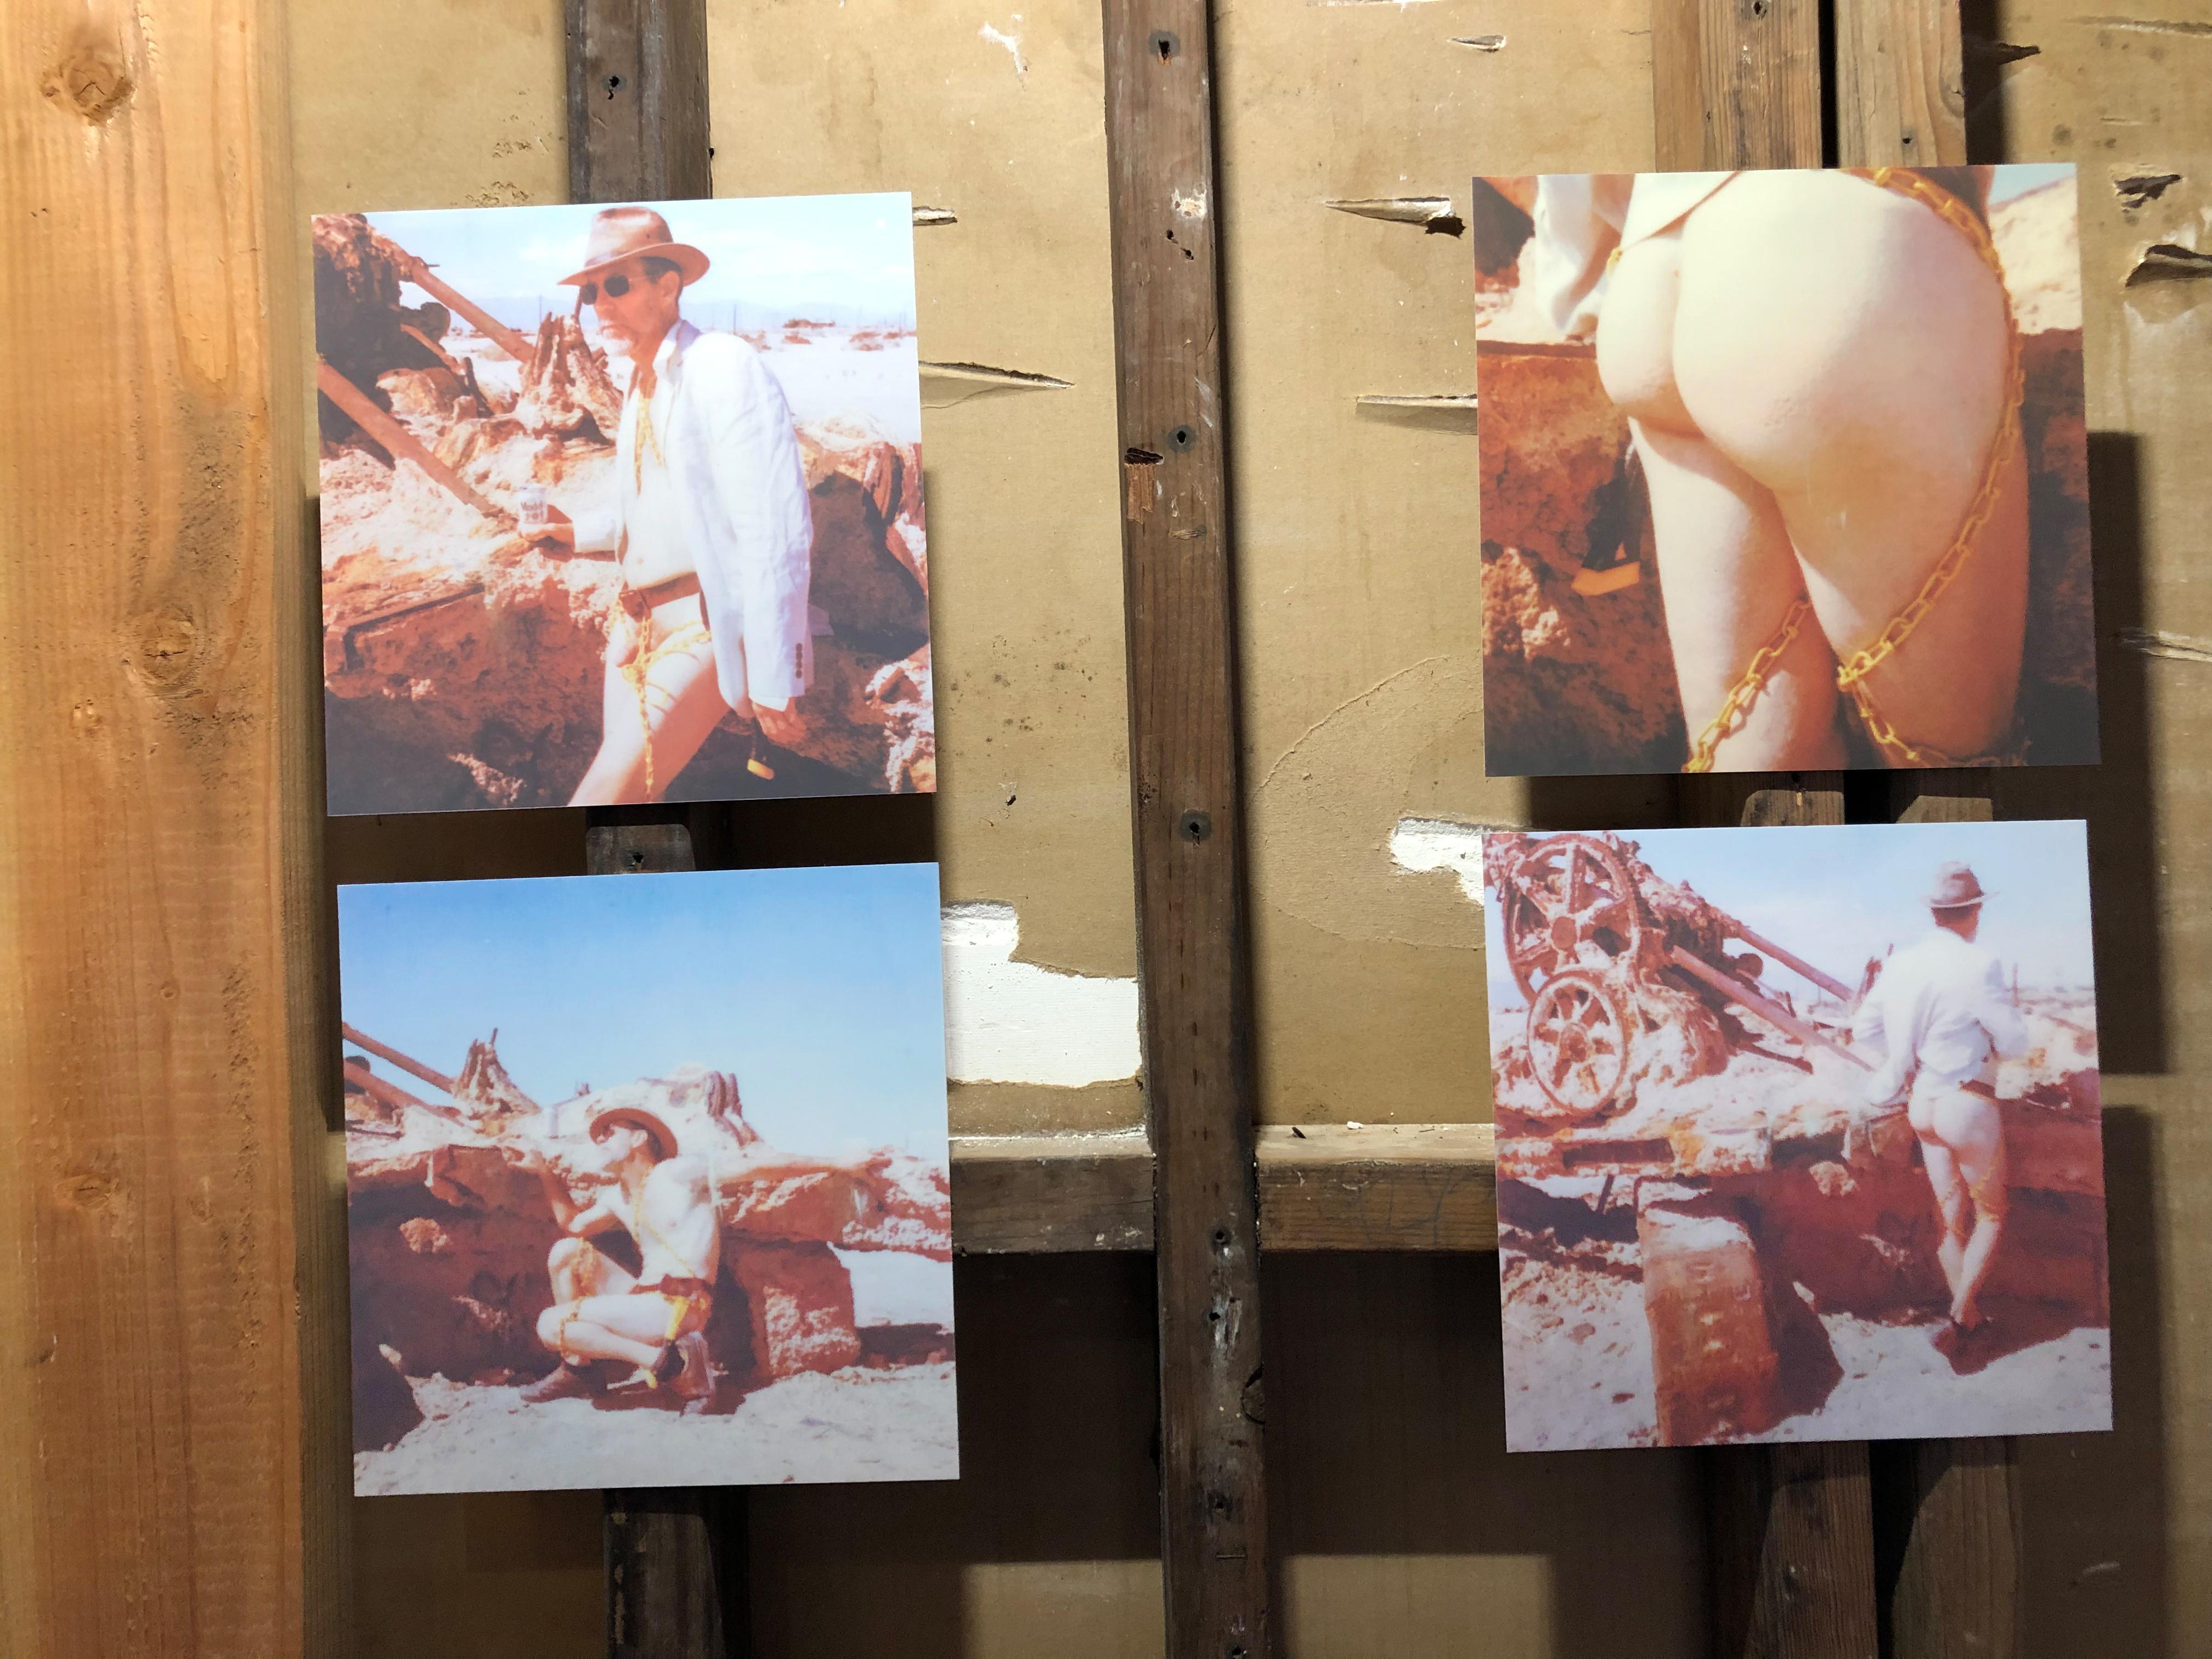 Last man standing - Zeitgenössisch, Nackt, Männer, Polaroid, 21. Jahrhundert – Photograph von Kirsten Thys van den Audenaerde